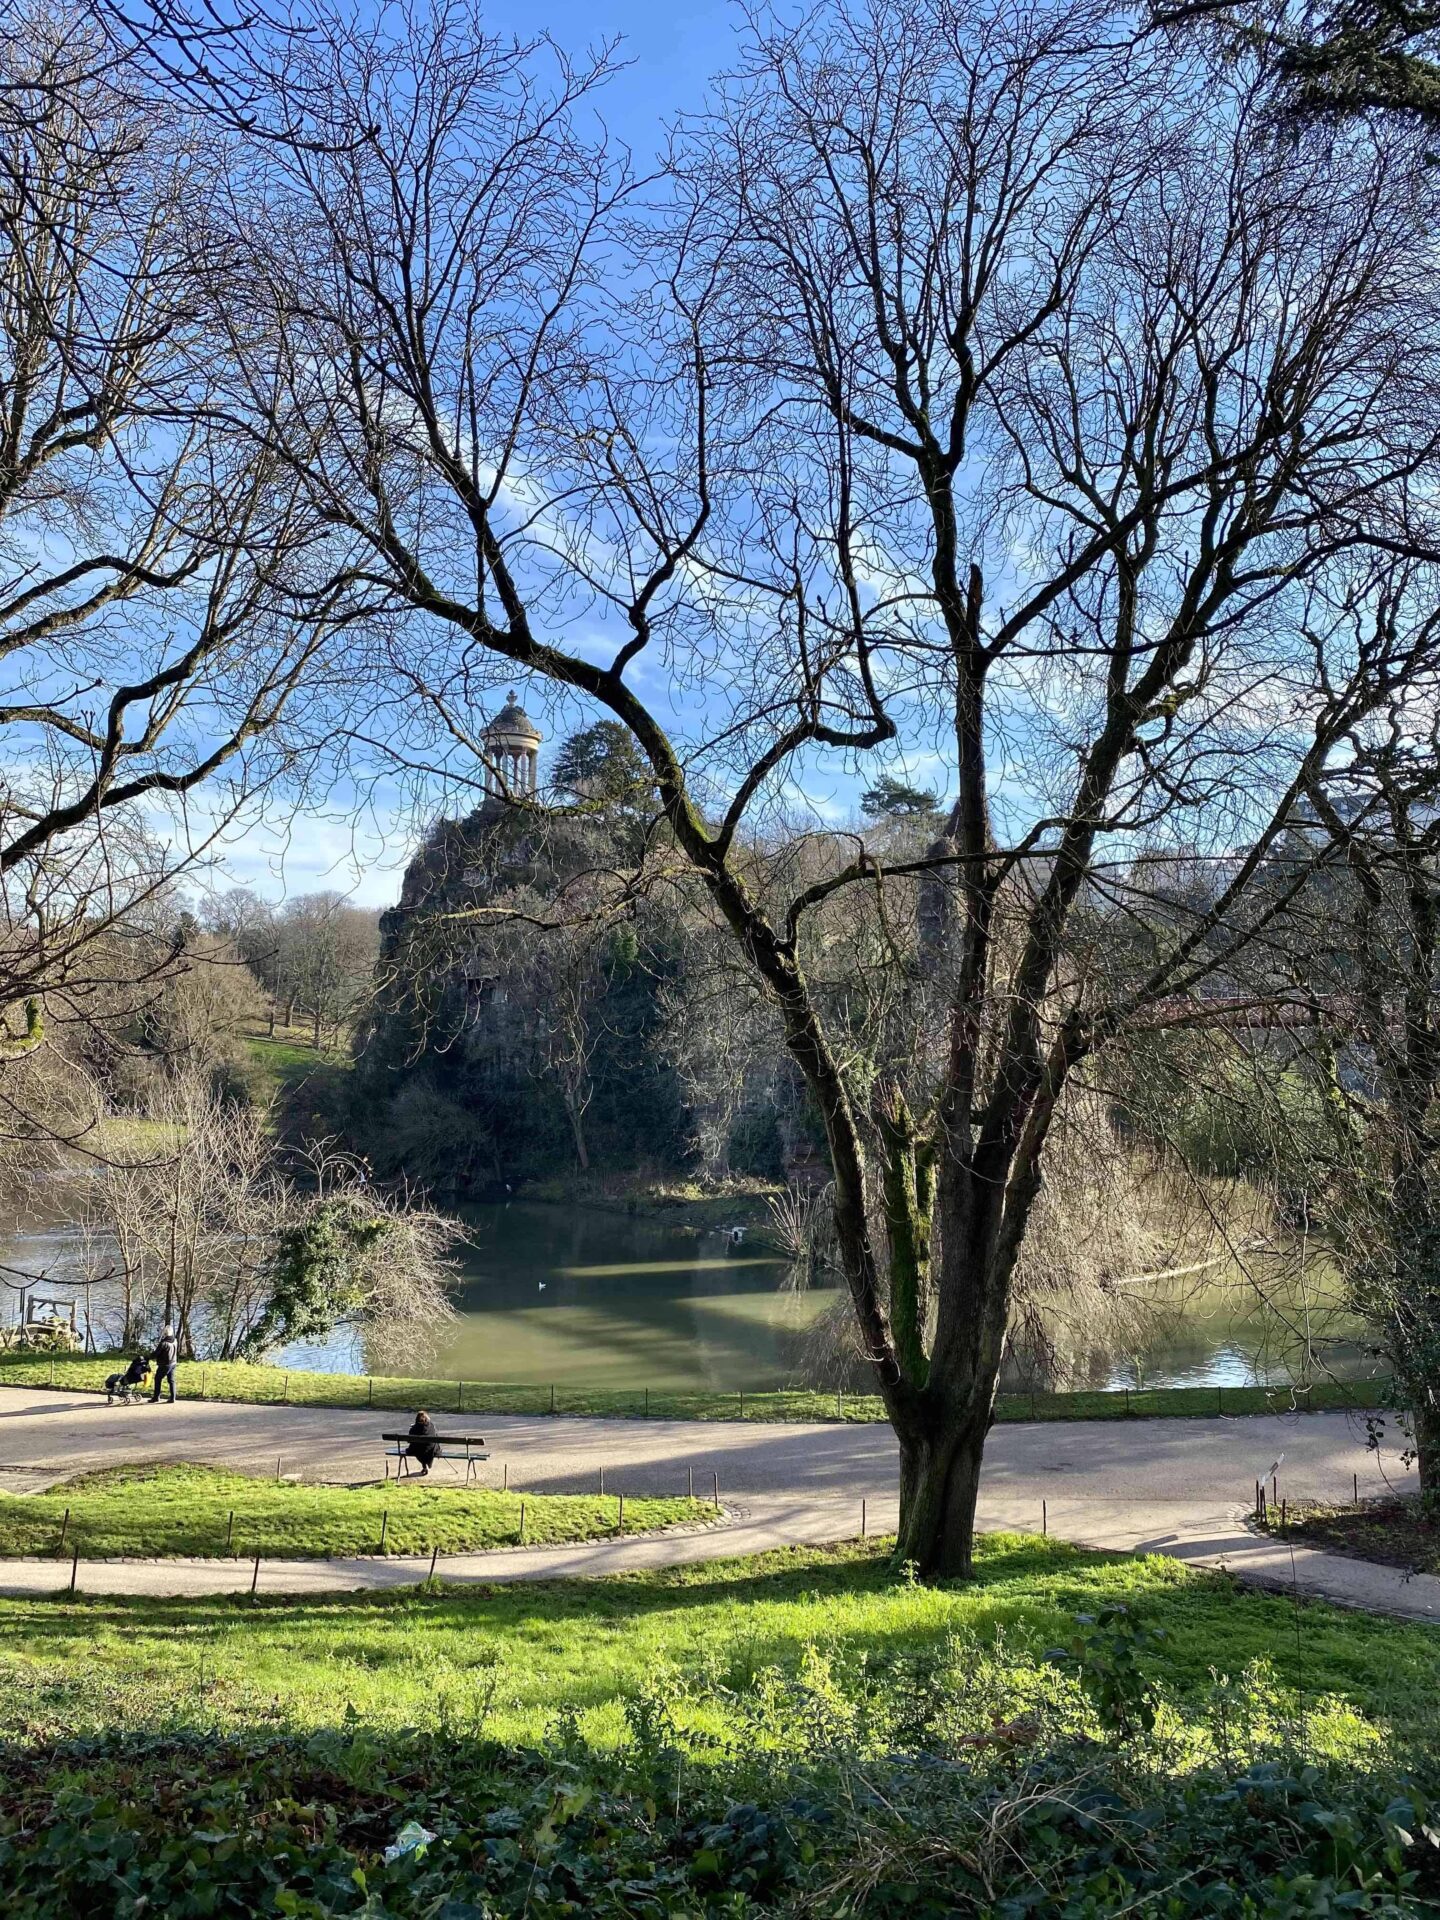 Park Buttes Chaumont in Paris, Aussicht auf den Felsvorsprung mit griechisch inspiriertem Tempel und grünen Wiesen